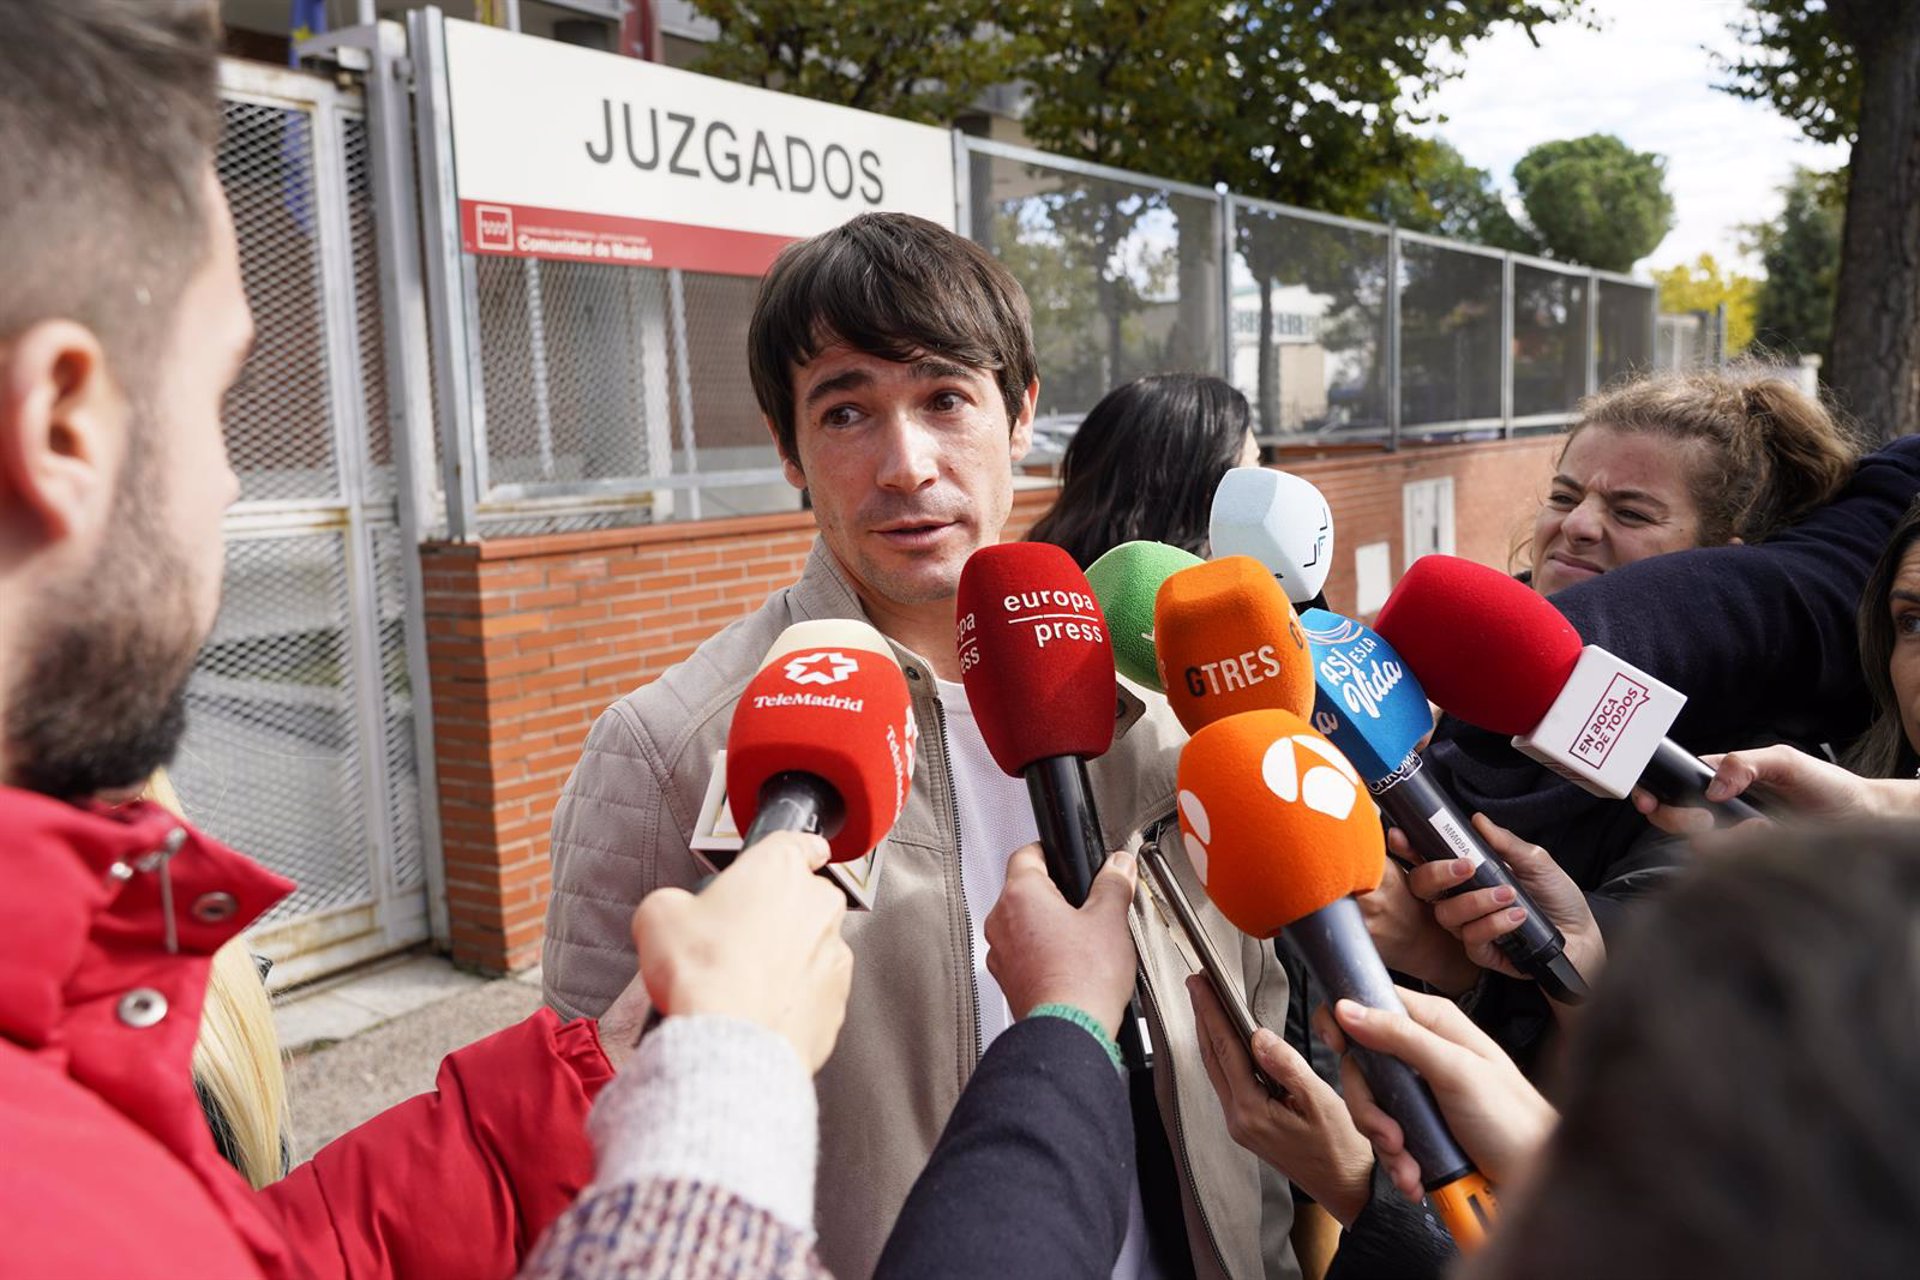 Juan José Ballesta atiende a los medios a la salida del juzgado tras declarar, a 07 de noviembre de 2023, en Parla (Madrid, España). El actor está siendo investigado por la presunta comisión de un delito de agresión sexual